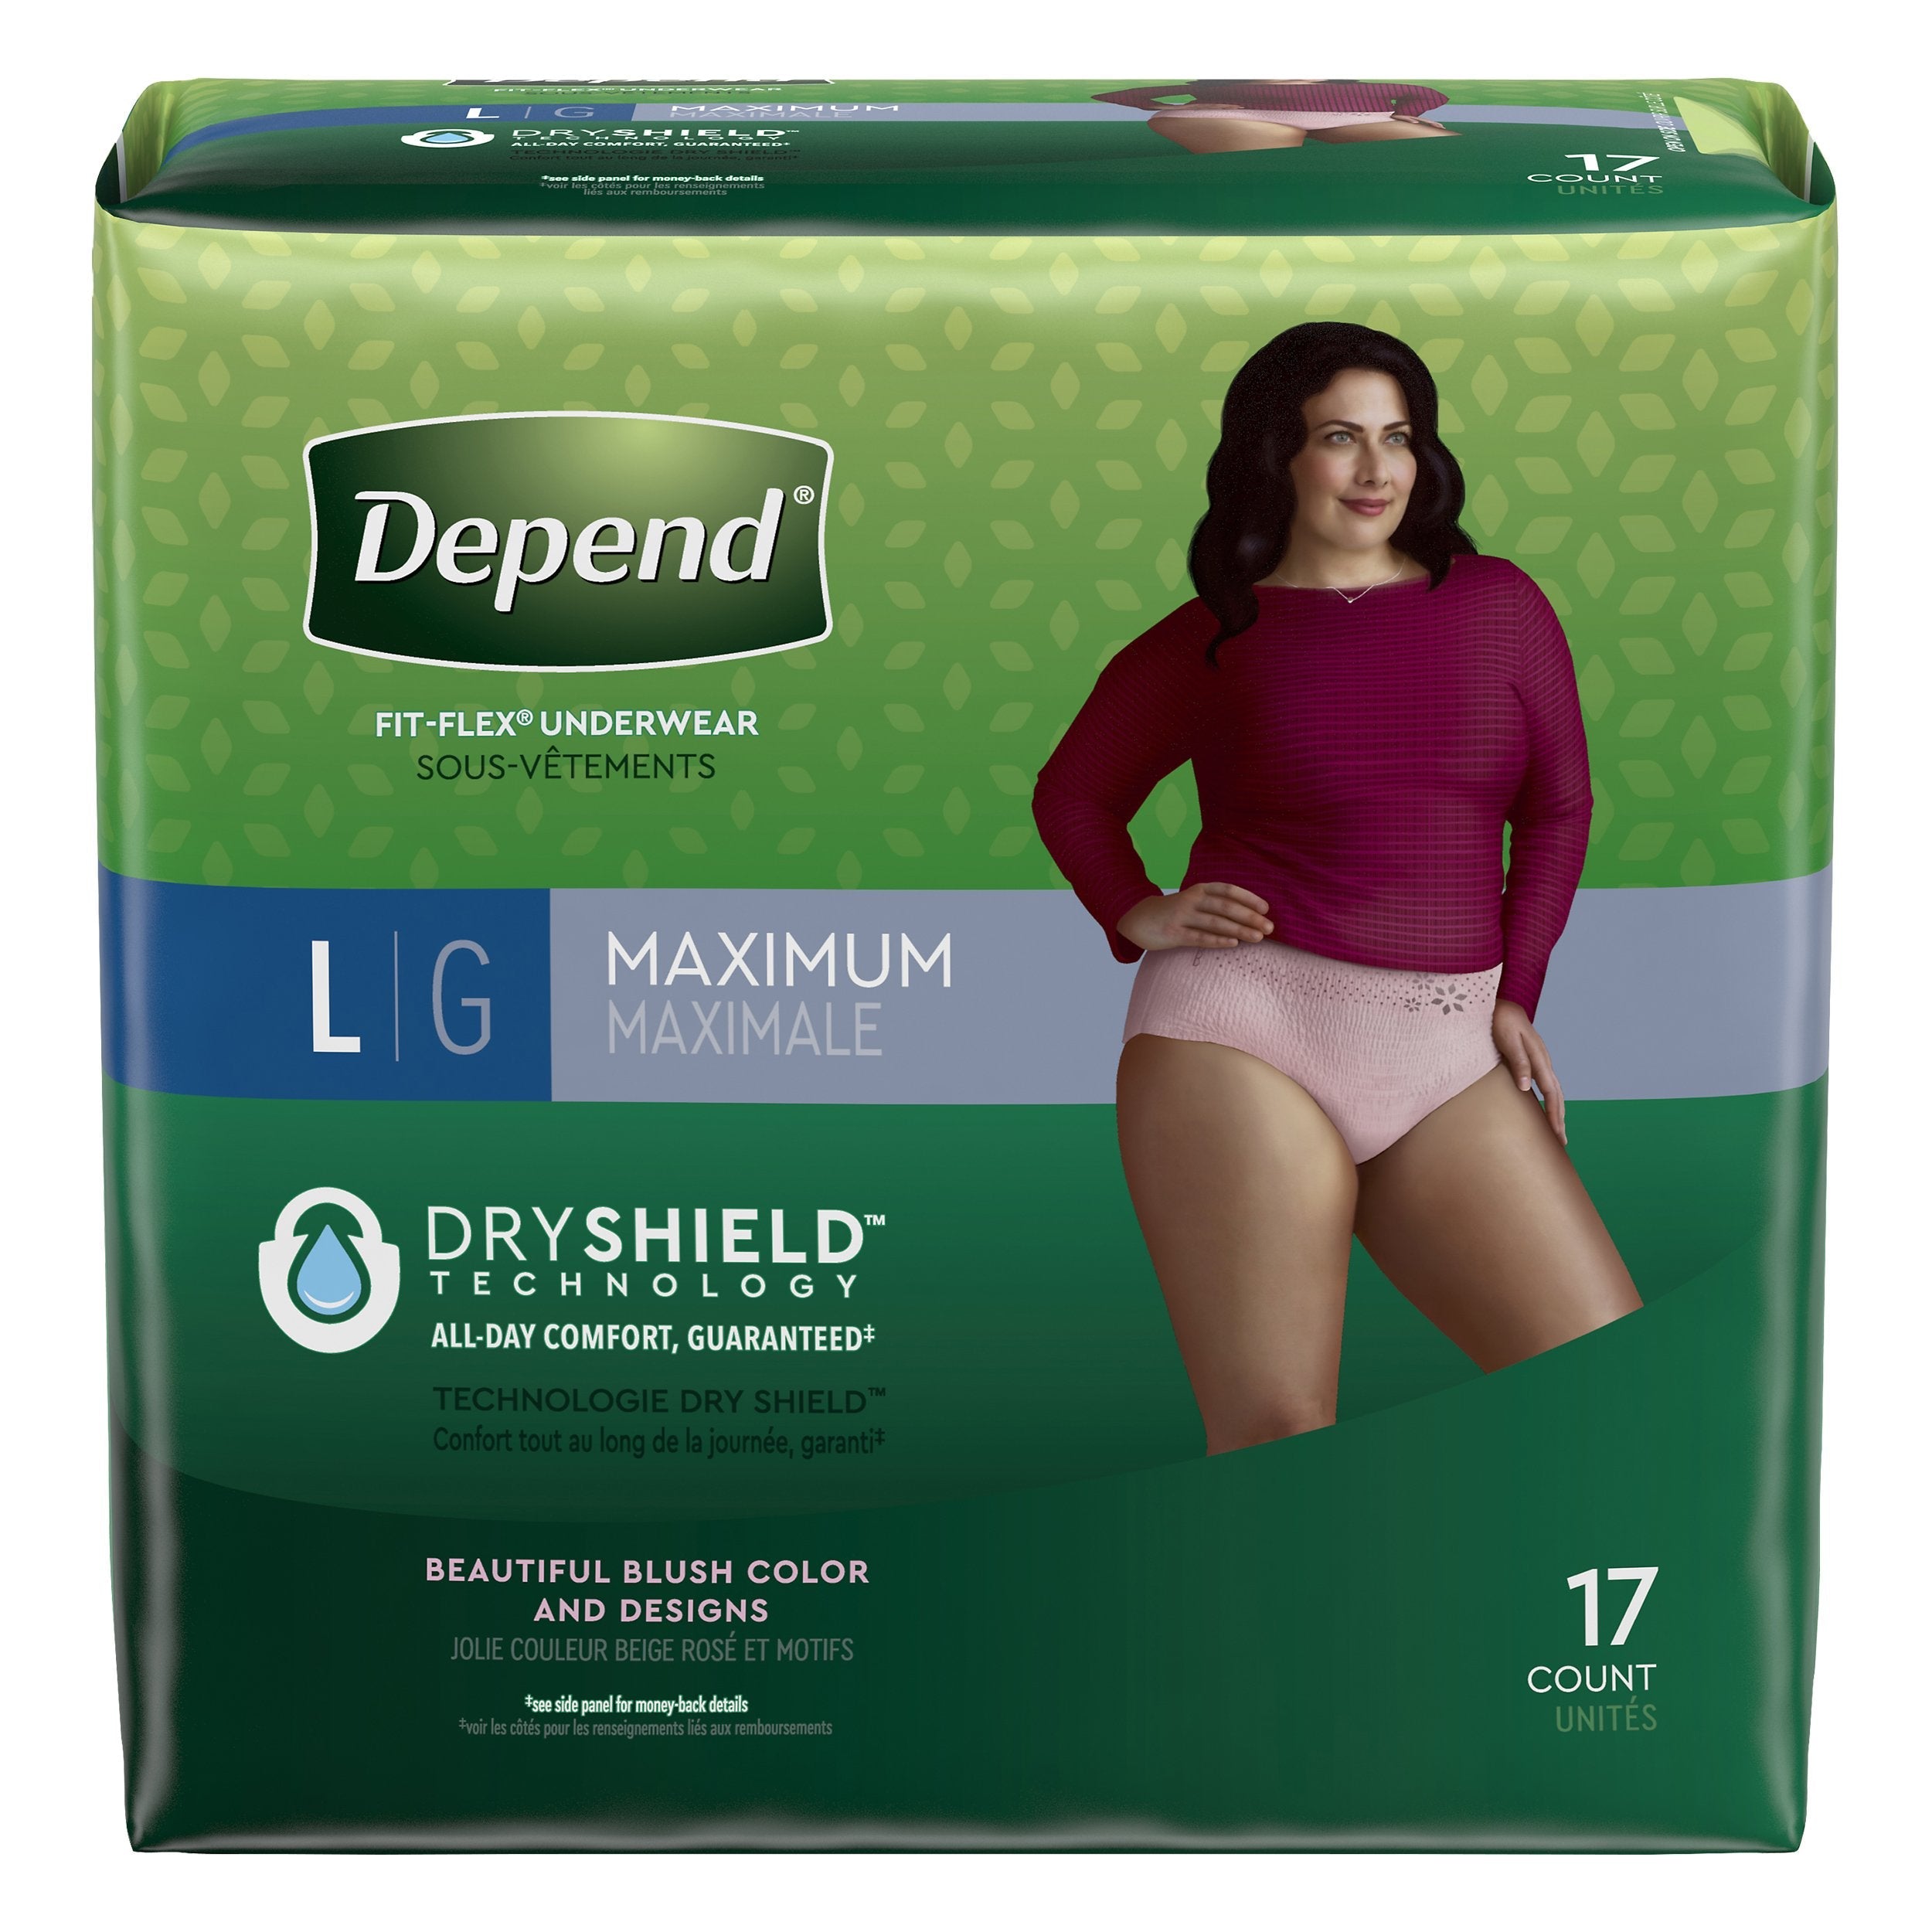 Depend Fit-Flex Underwear For Women Large Maximum Absorbency - 17